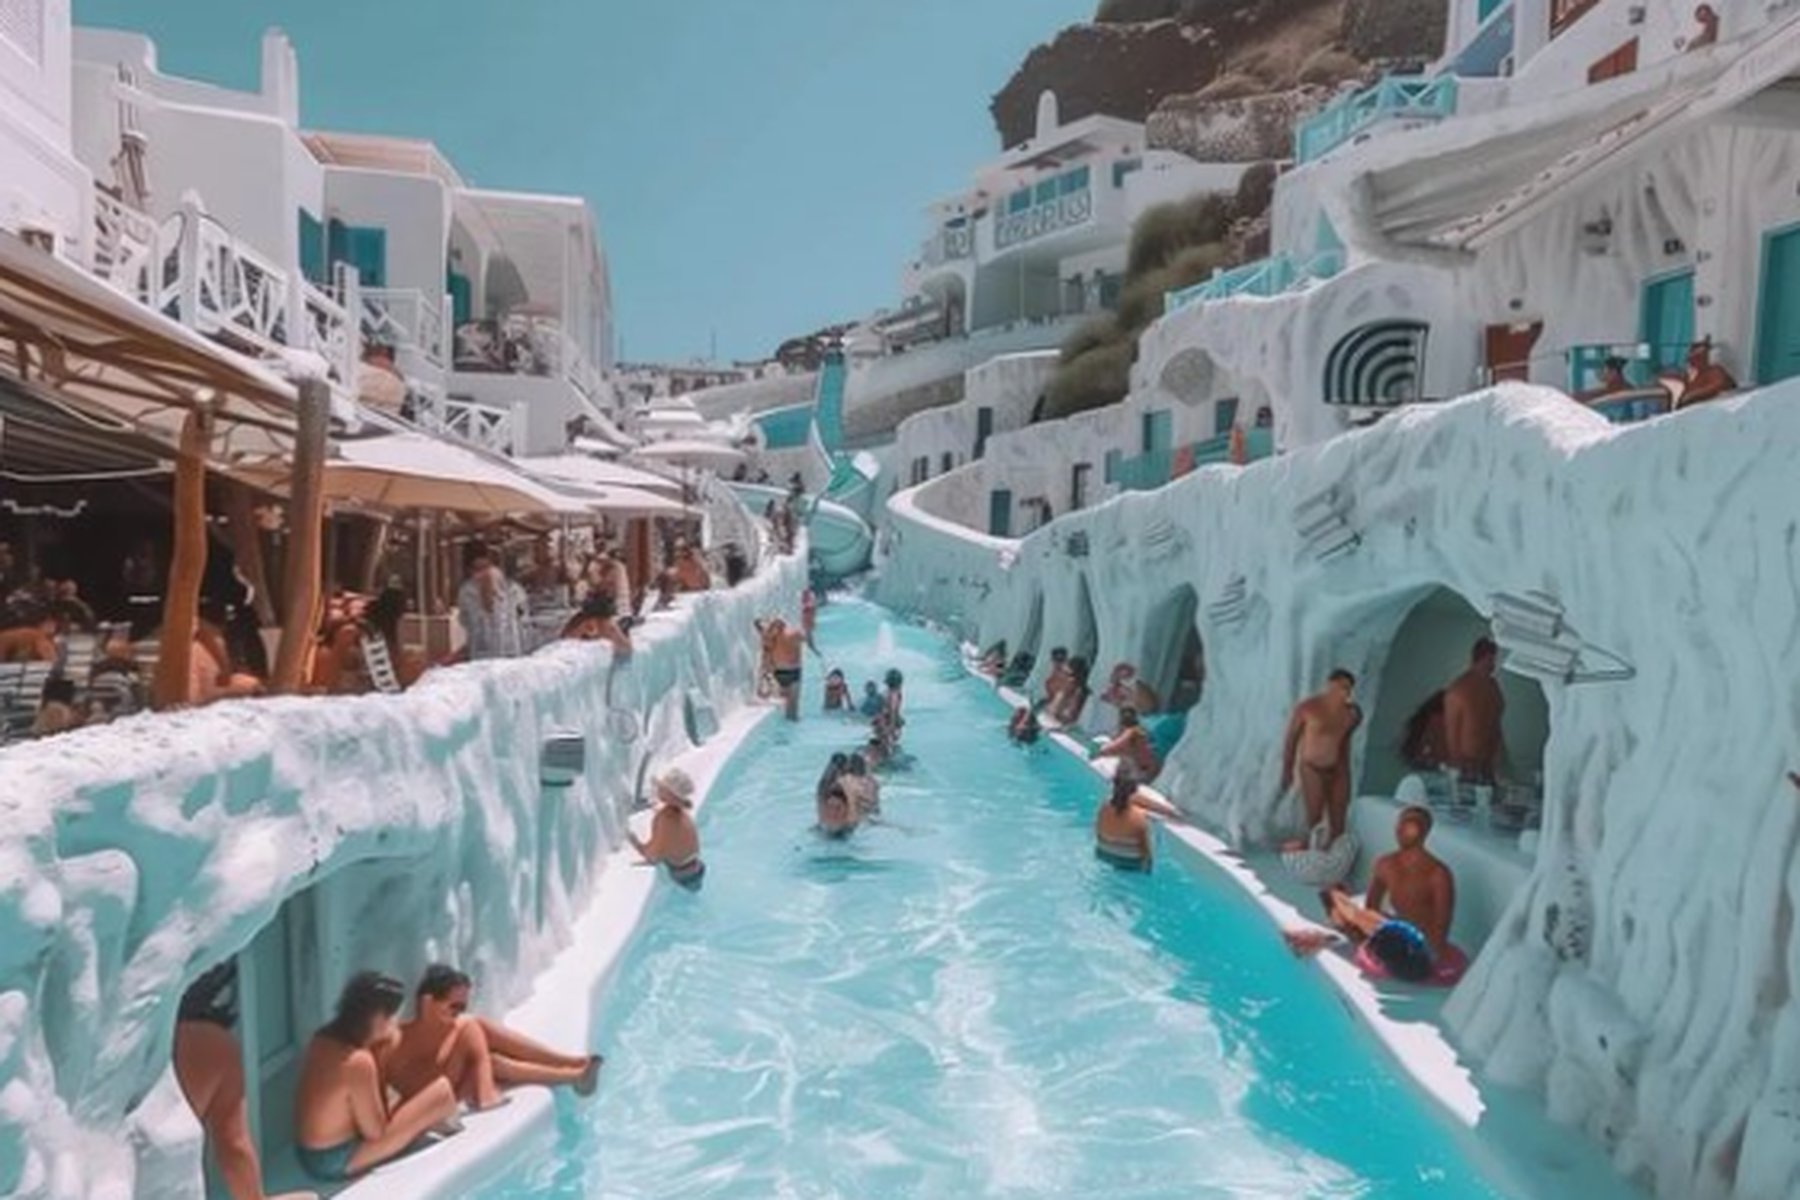 Wasserrutsche in der Stadt : Touristen werden mit KI-generiertem Bild von Santorini getäuscht 